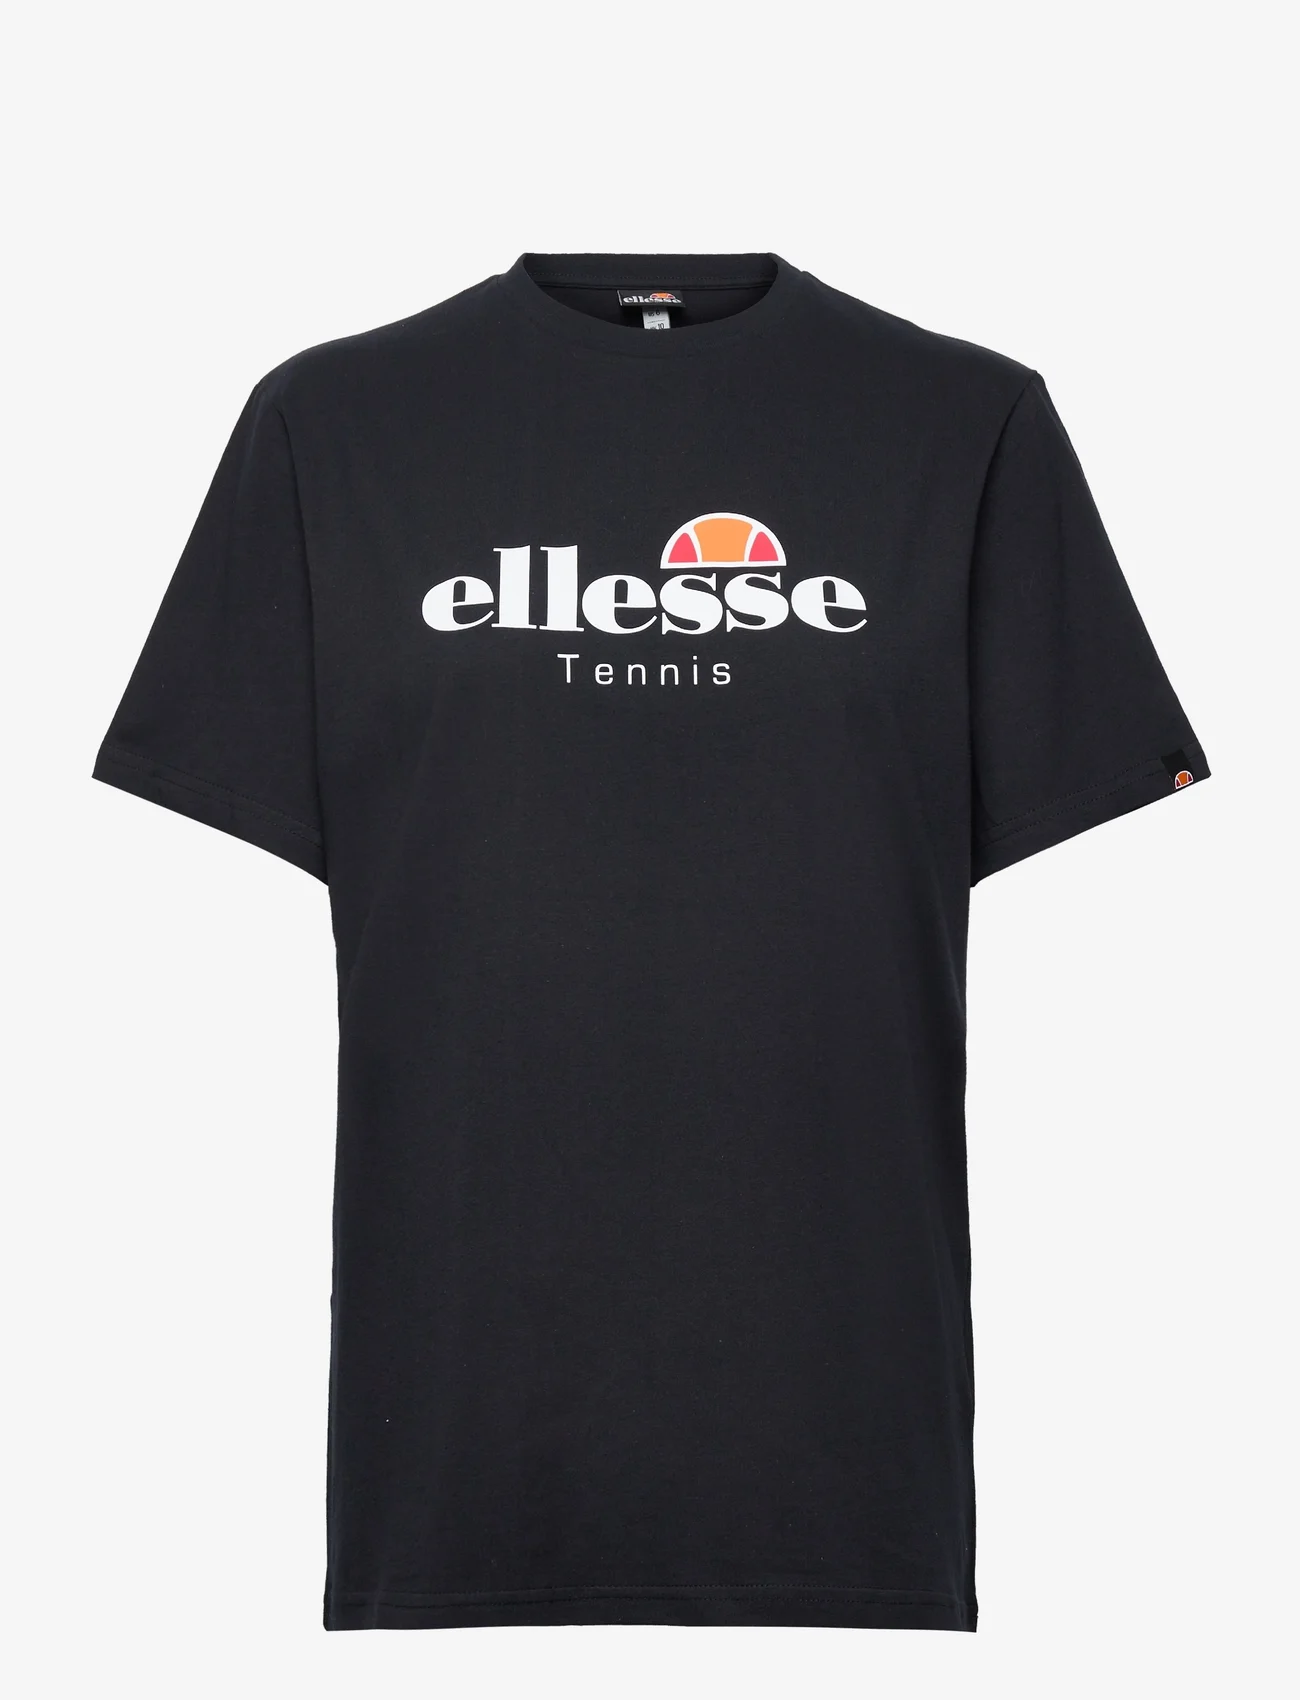 Ellesse - EL COLPO TEE - t-shirts - black - 0